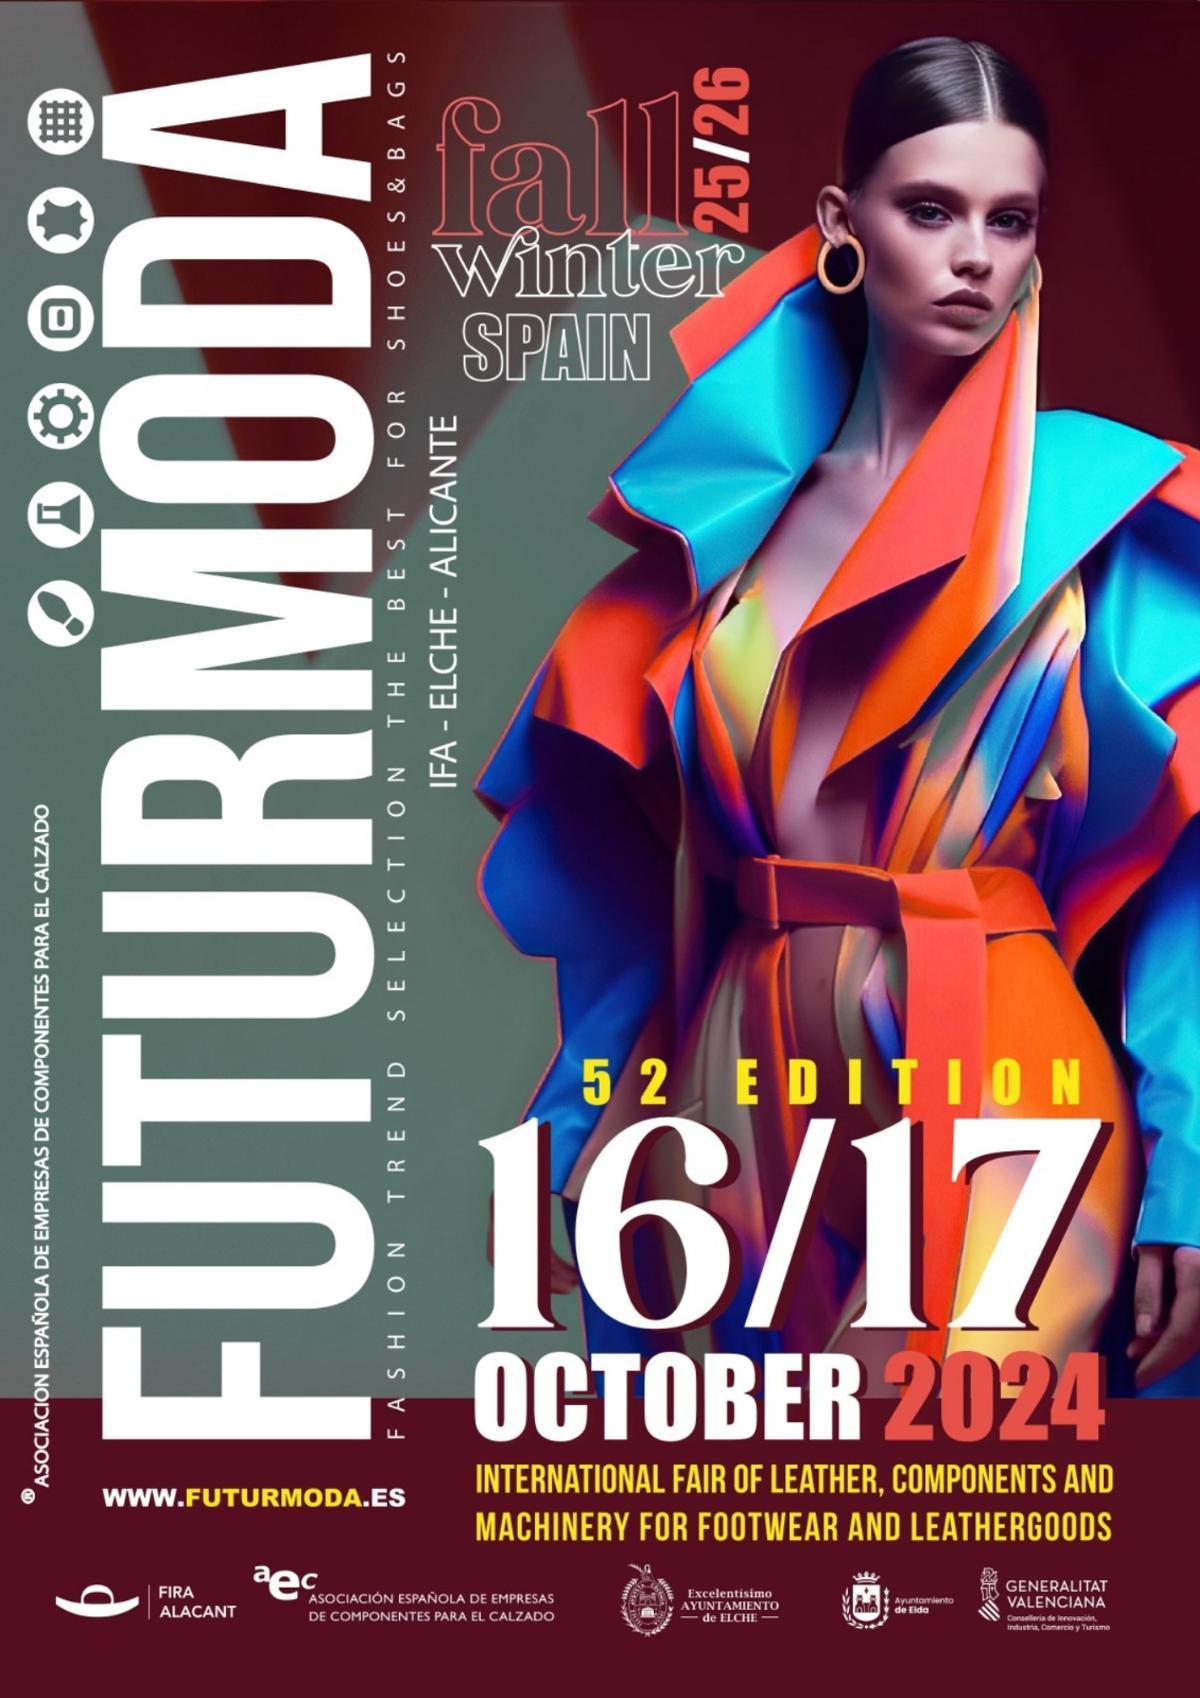 Futurmoda renueva imagen para la edición de octubre.